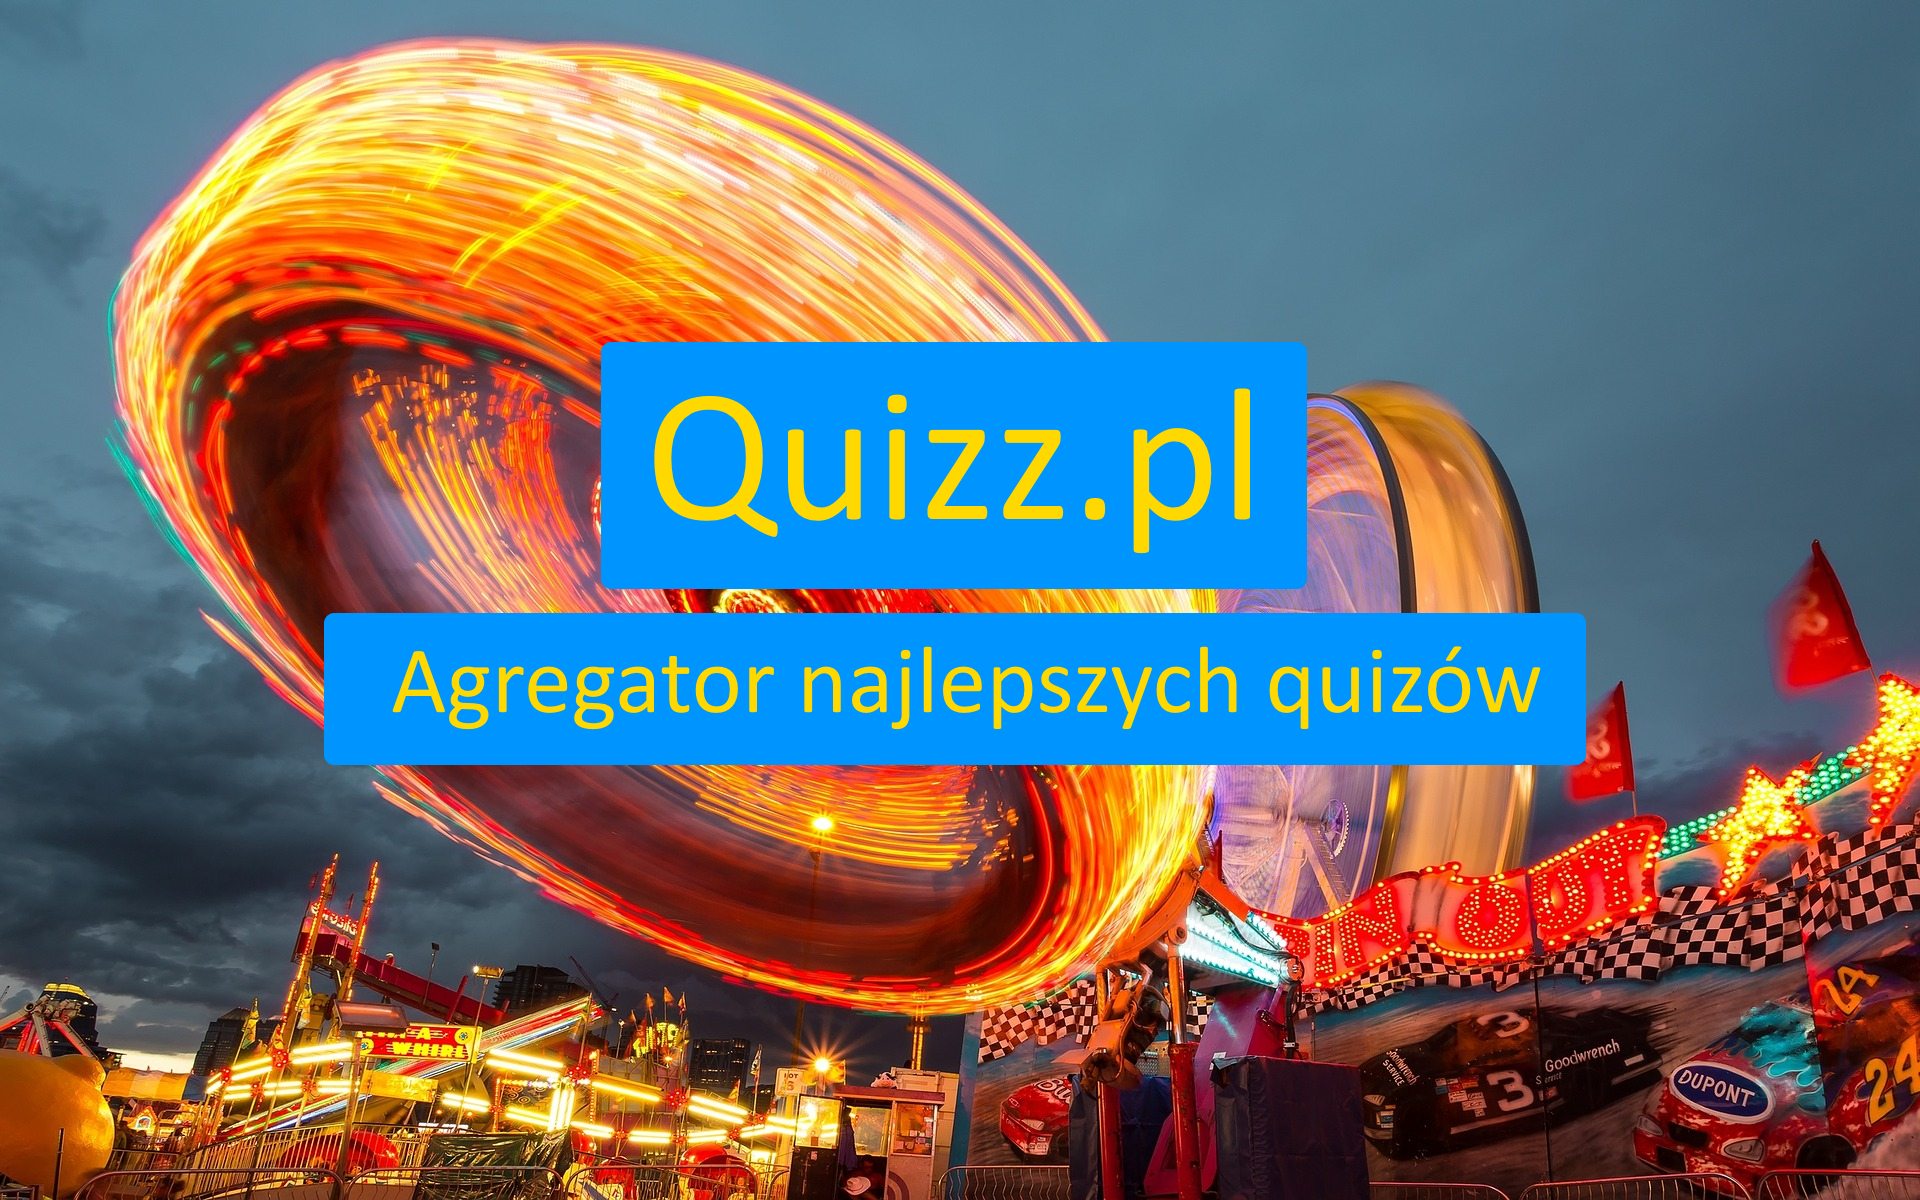 O chłopakach - bezpłatne quizy, testy wiedzy i ankiety - www.quizz.pl